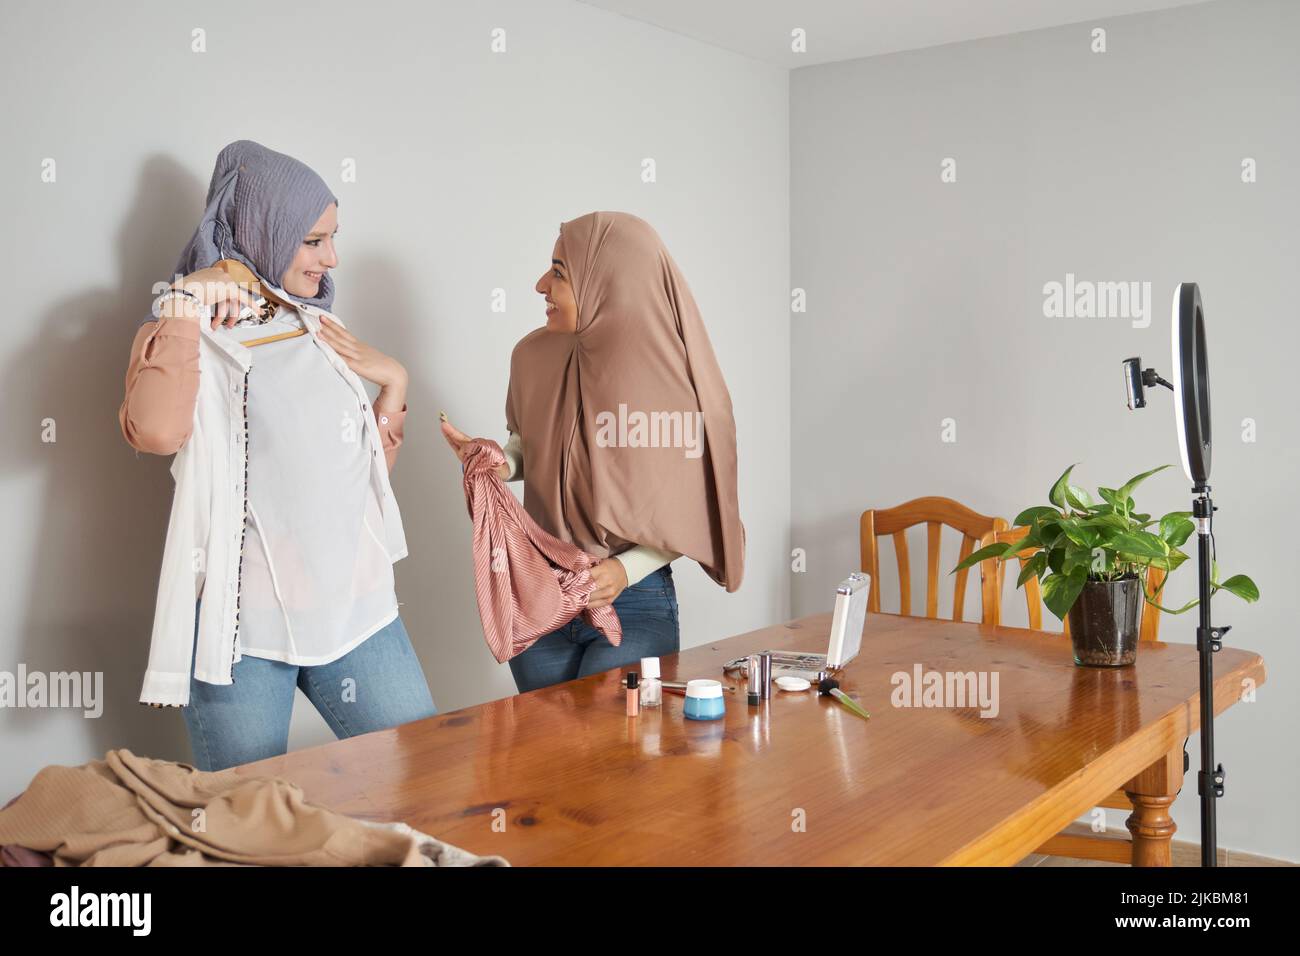 De jeunes bûcherons musulmans filmant en direct un journal de mode avec des vêtements élégants. Banque D'Images